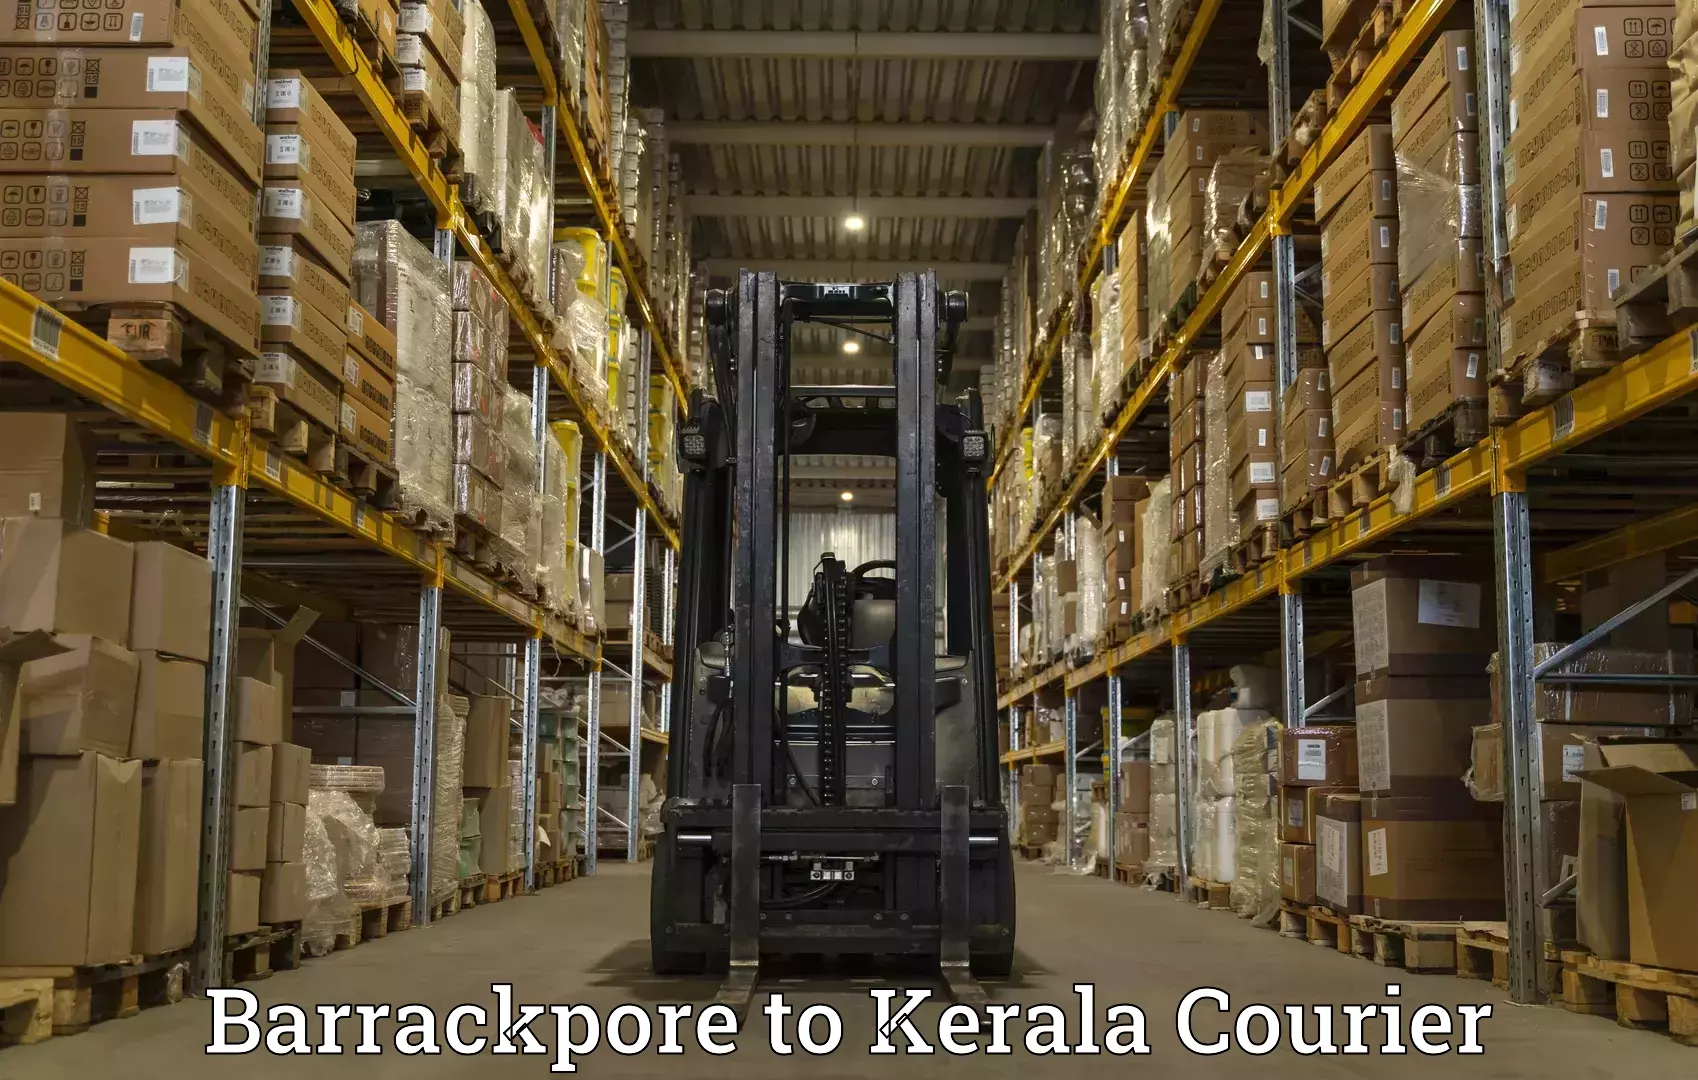 24-hour courier service Barrackpore to Calicut University Malappuram